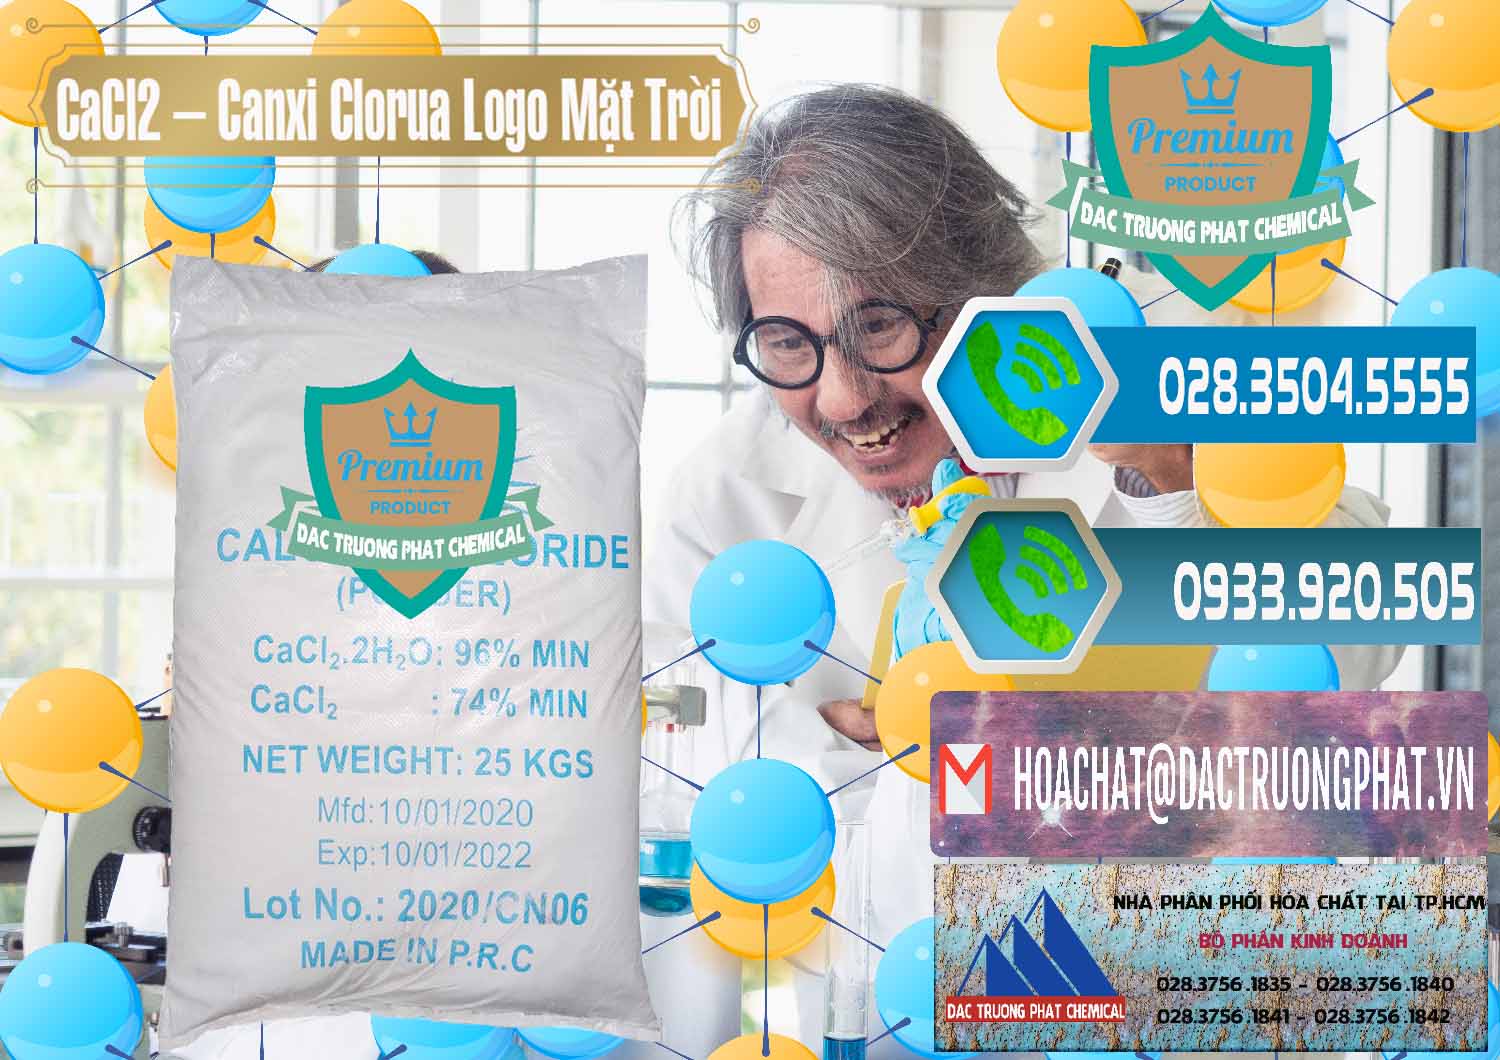 Chuyên cung ứng - bán CaCl2 – Canxi Clorua 96% Logo Mặt Trời Trung Quốc China - 0041 - Công ty phân phối - cung cấp hóa chất tại TP.HCM - congtyhoachat.net